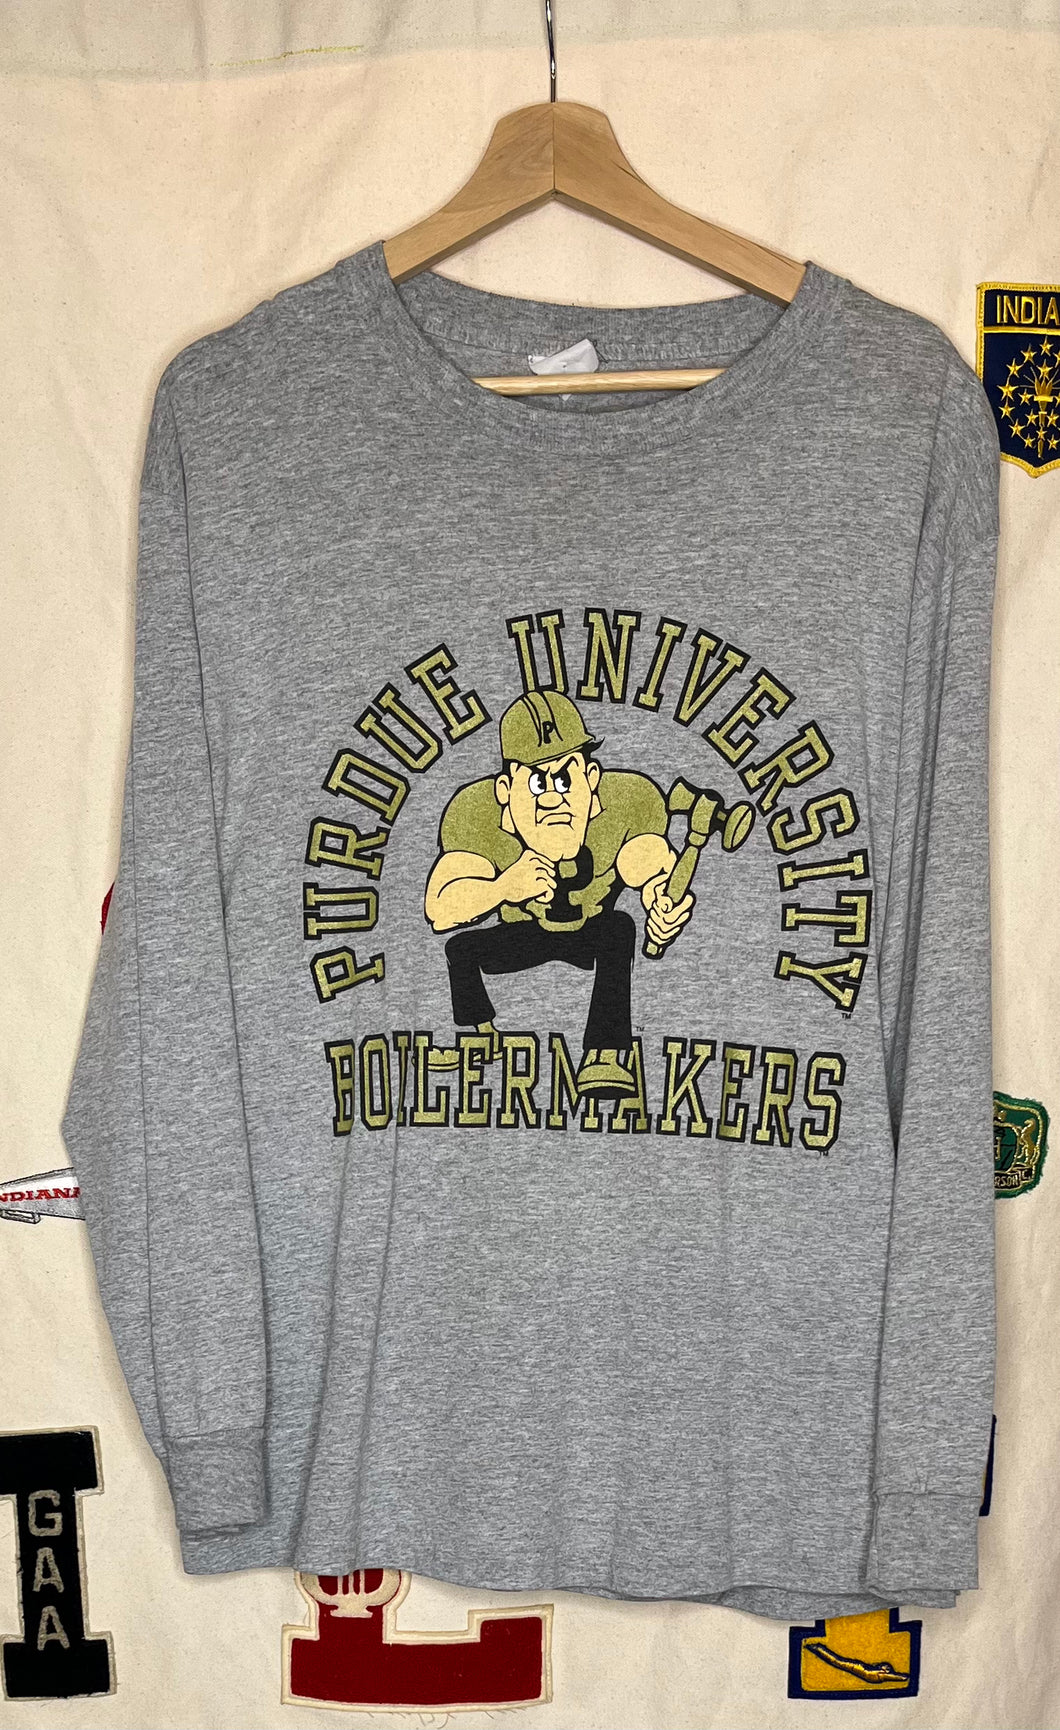 Purdue University Purdue Pete Long-Sleeve T-Shirt: L